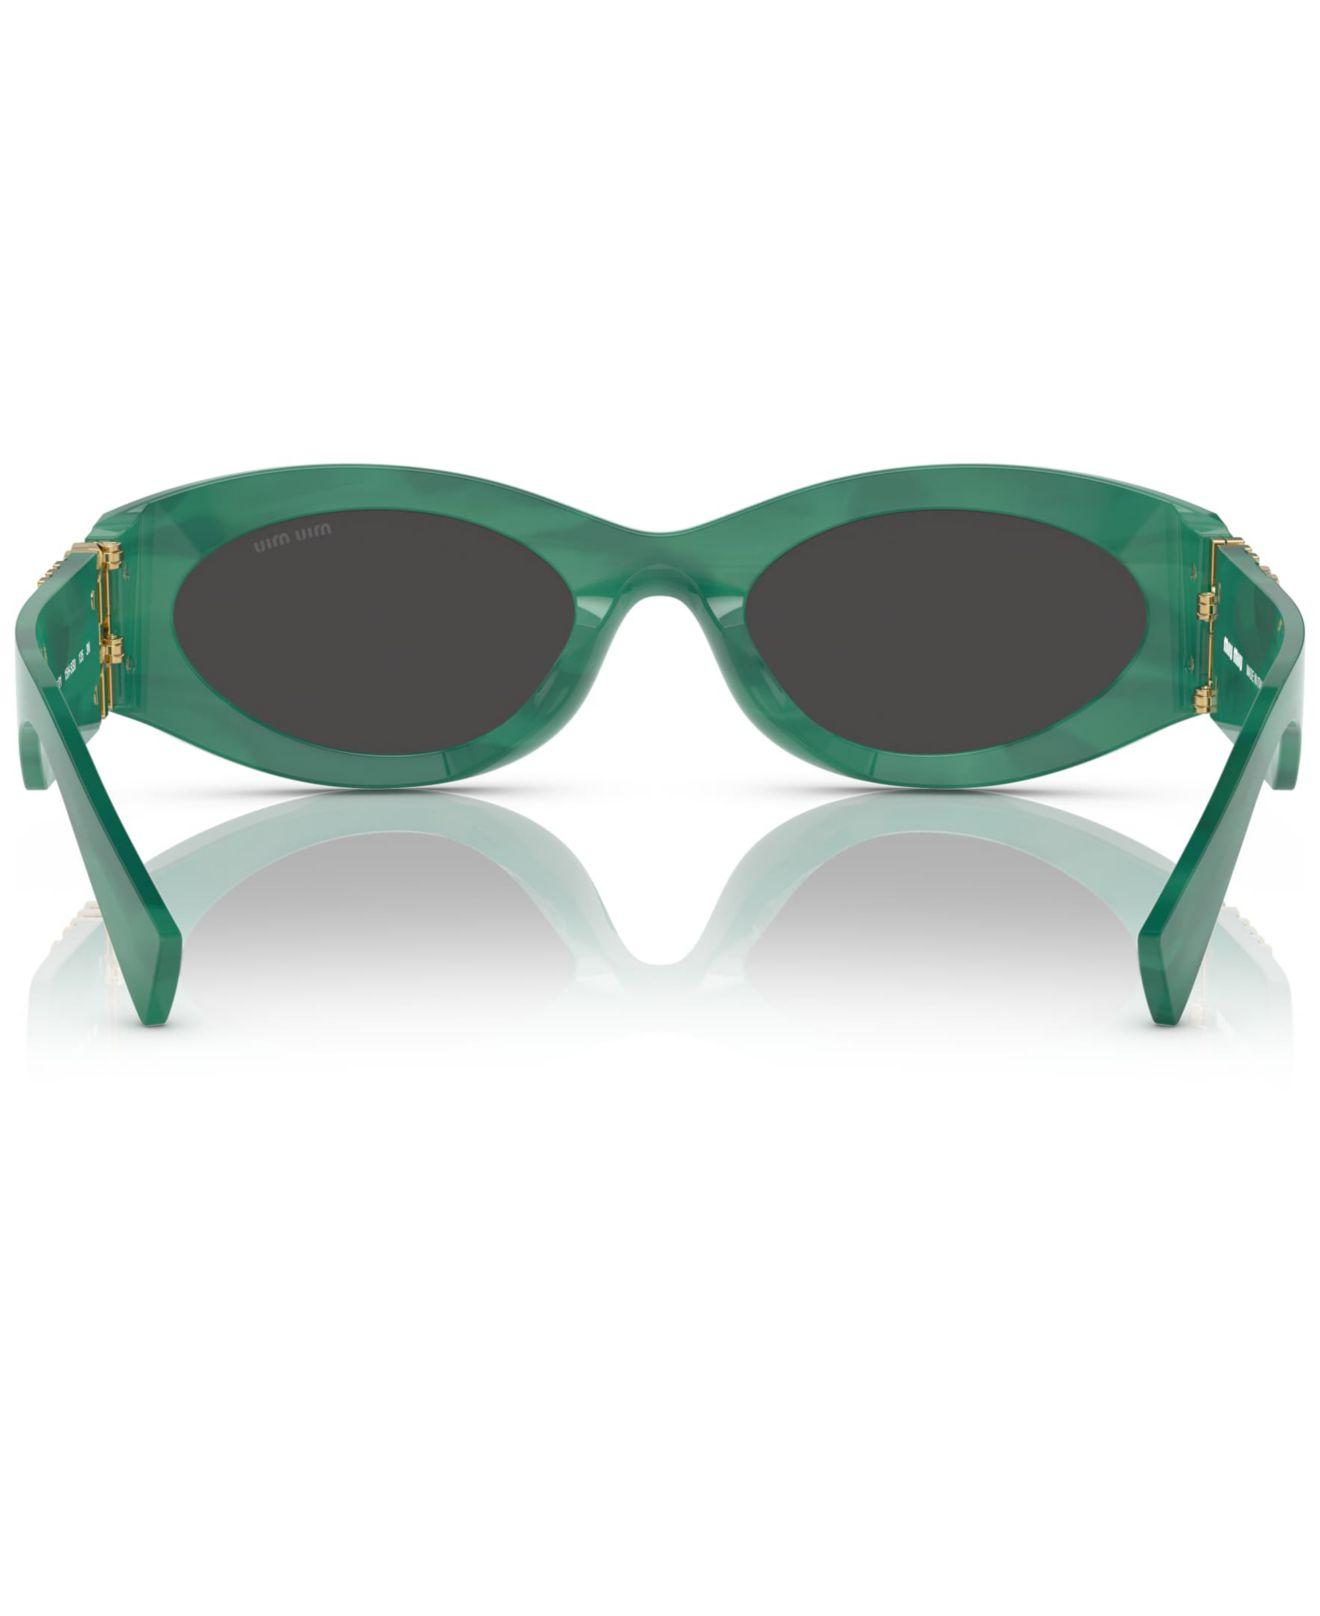 Miu Miu Sunglasses, Mu 11ws54-x in Green | Lyst